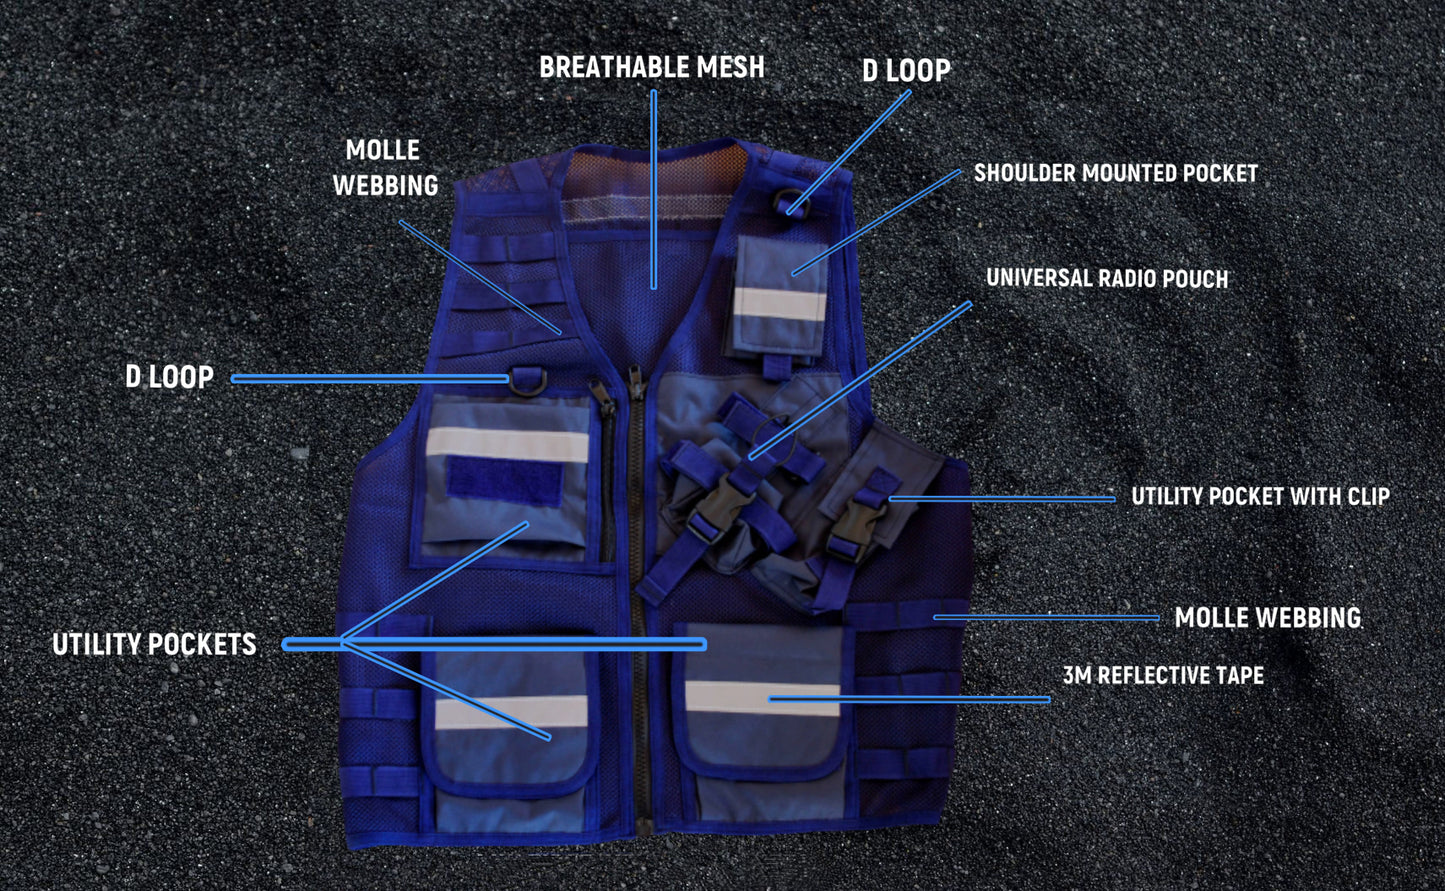 HN-300 Load Bearing Vest